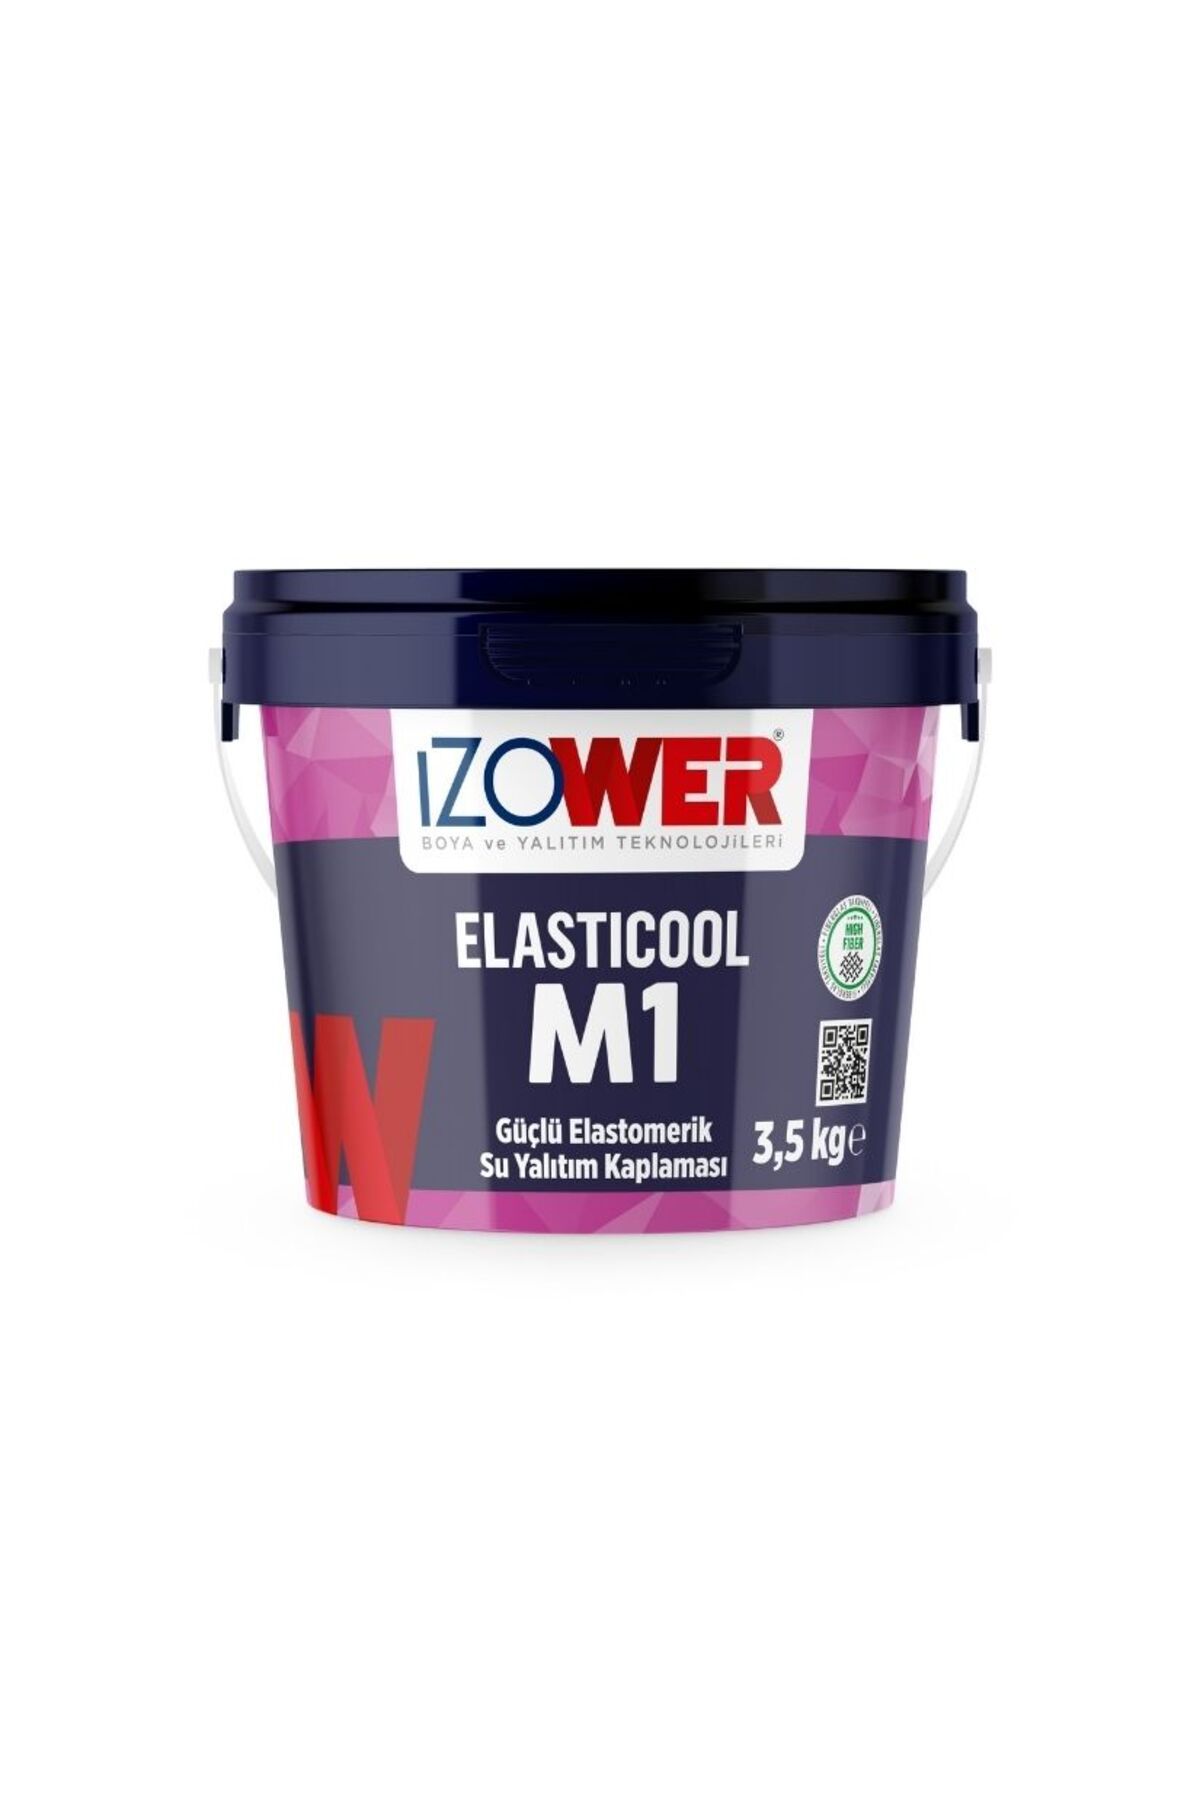 izower M1 Güçlü Elastomerik Su Yalıtım Kaplaması- Kiremit Rengi- 3.5 Kg